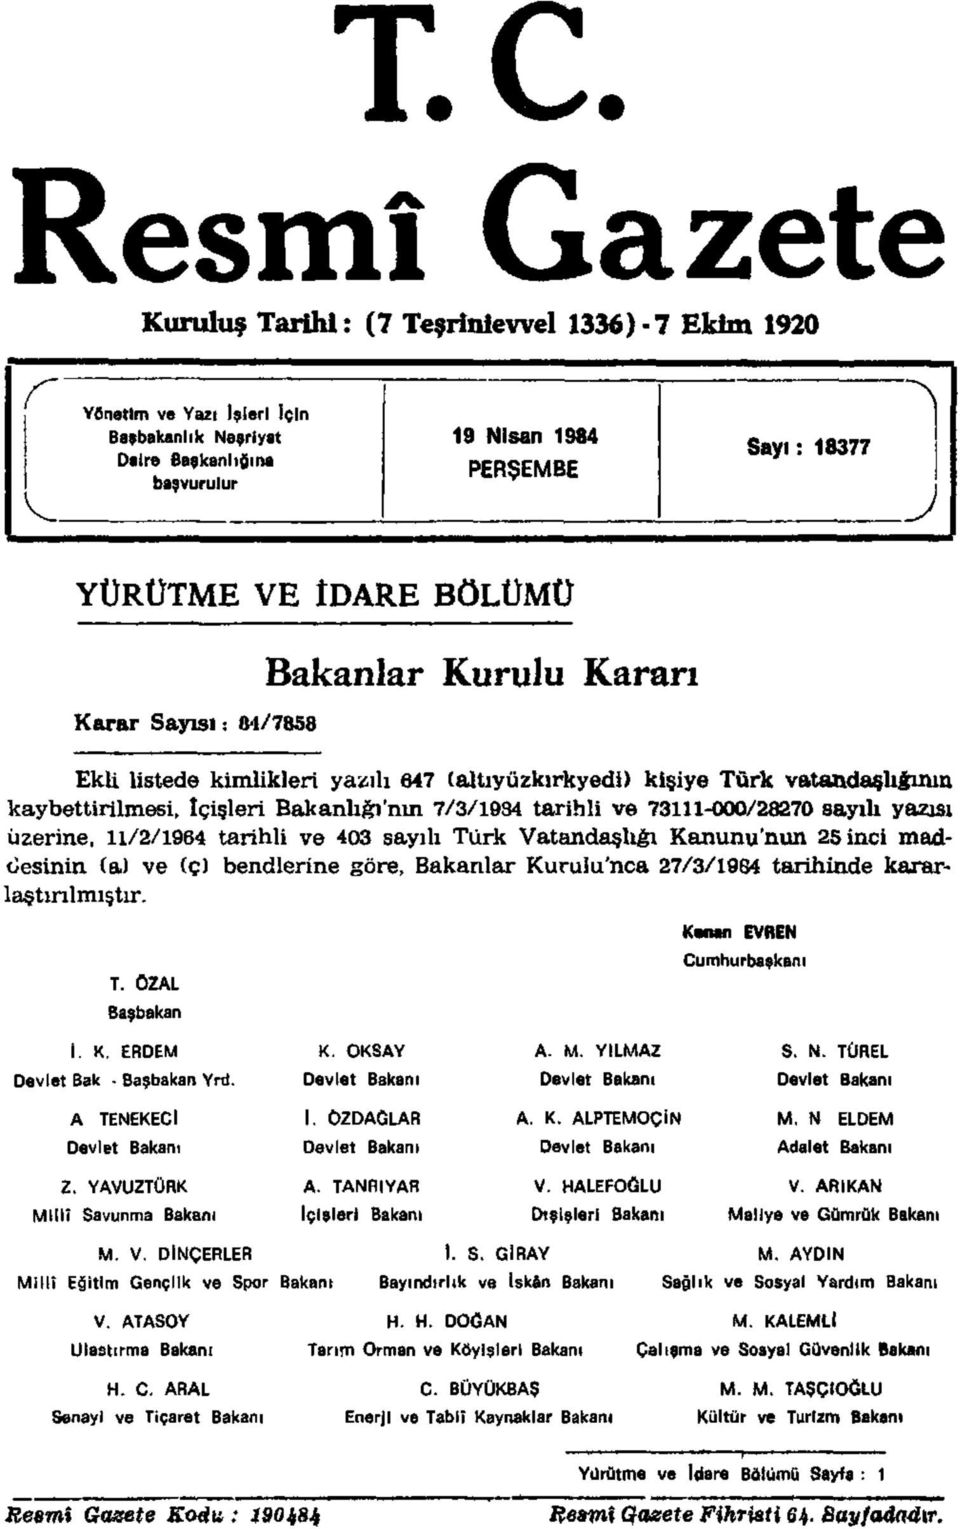 73111-000/28270 sayılı yazısı üzerine, 11/2/1964 tarihli ve 403 sayılı Türk Vatandaşlığı Kanunu'nun 25 inci maddesinin (a) ve (ç) bendlerine göre, Bakanlar Kurulu'nca 27/3/1984 tarihinde